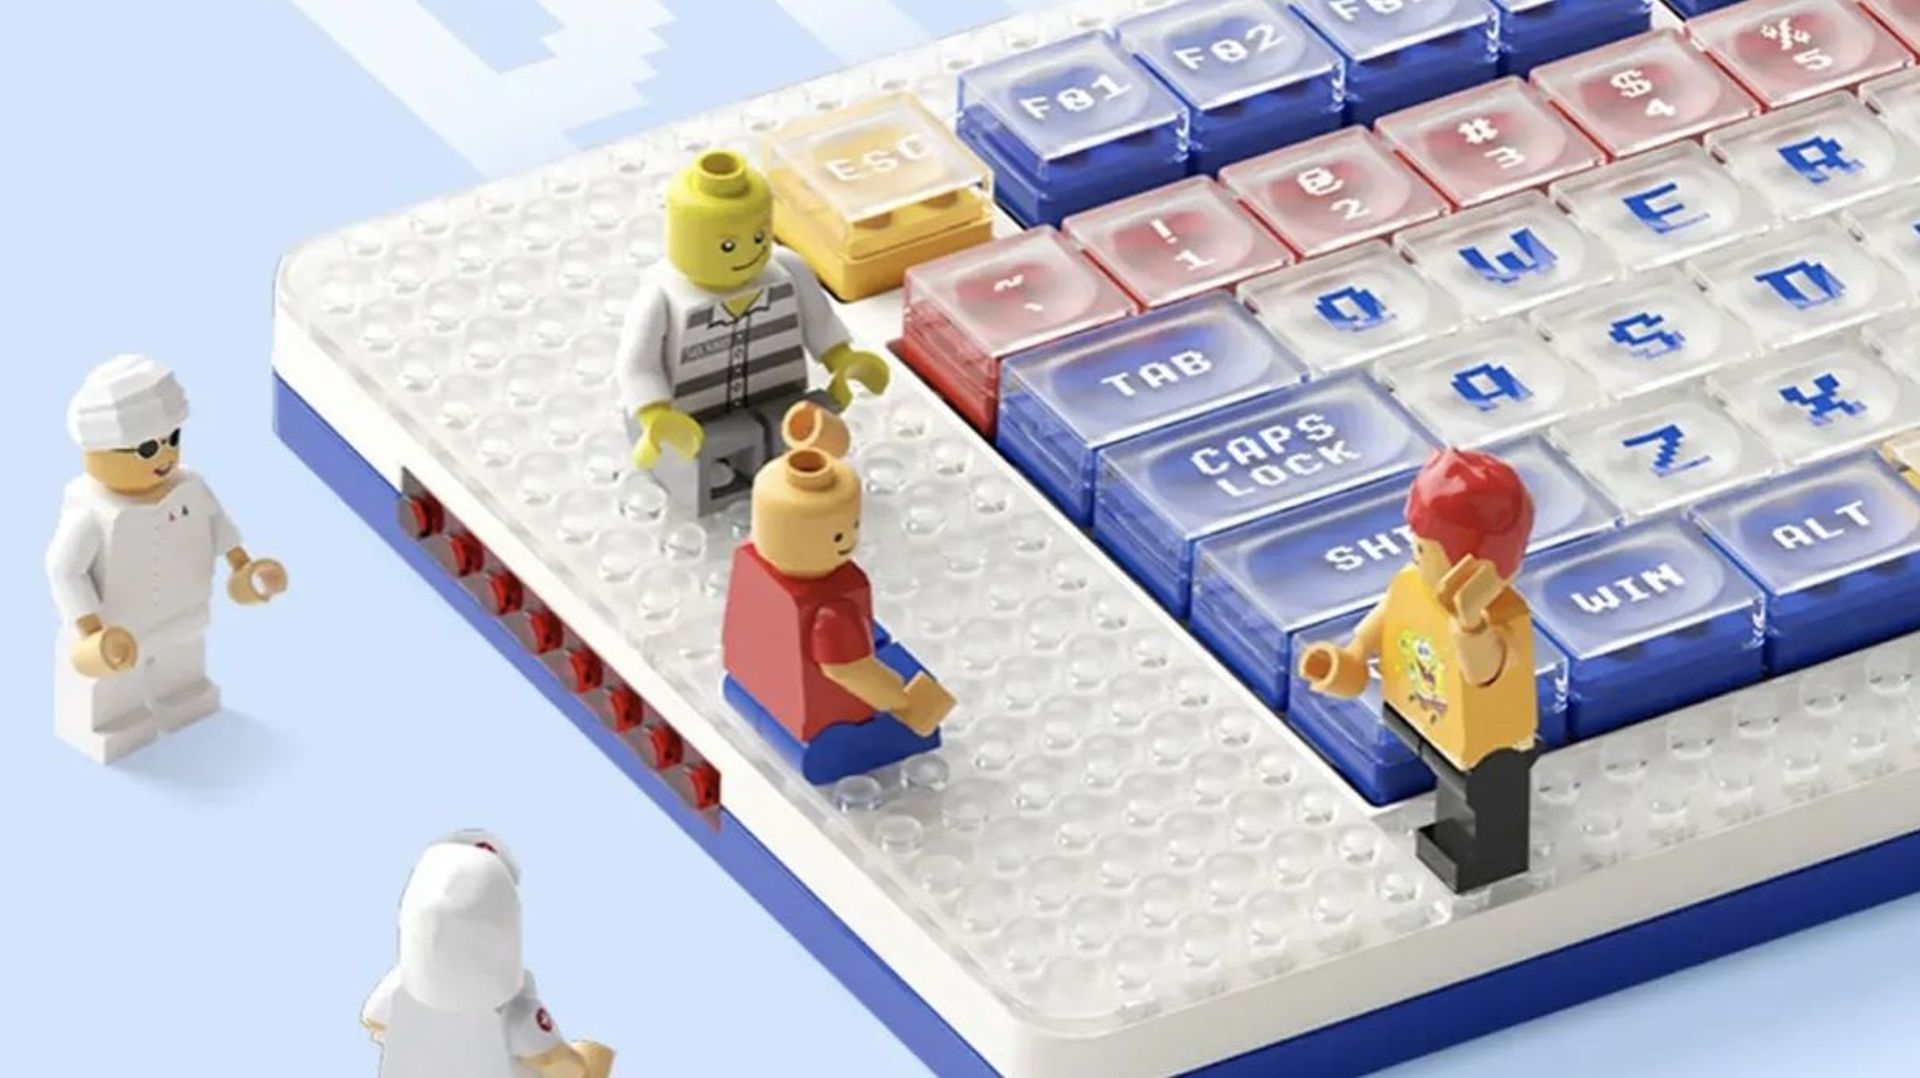 Ce clavier peut être personnalisé avec des briques LEGO 